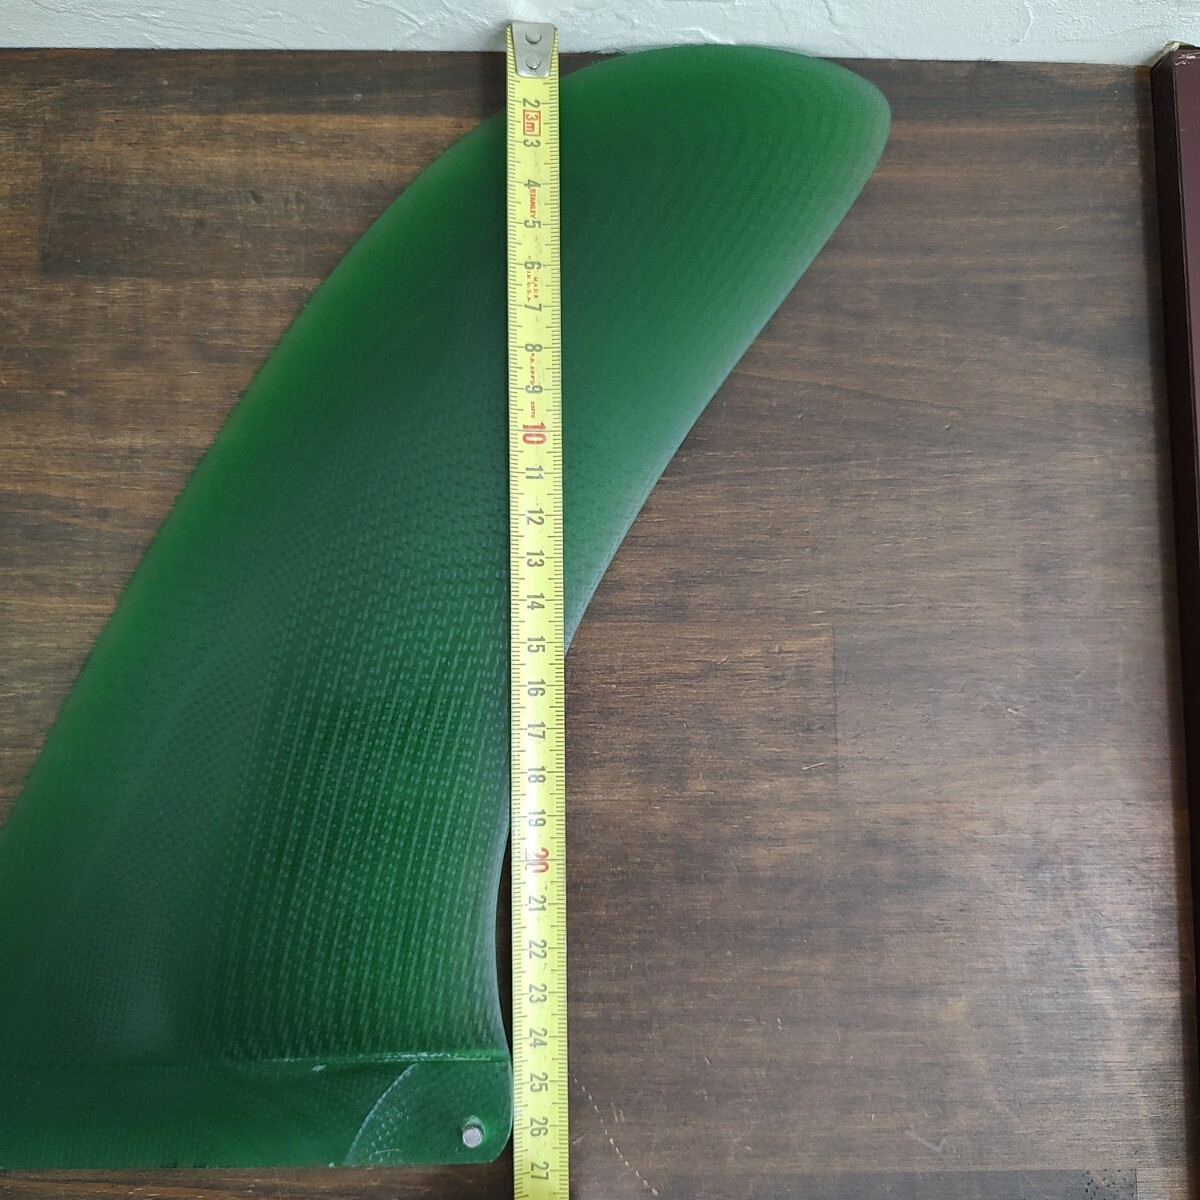 9.5インチ センターフィン ロングボード シングルフィン ファイバーグラス製 アースカラー フィン ノーブランド